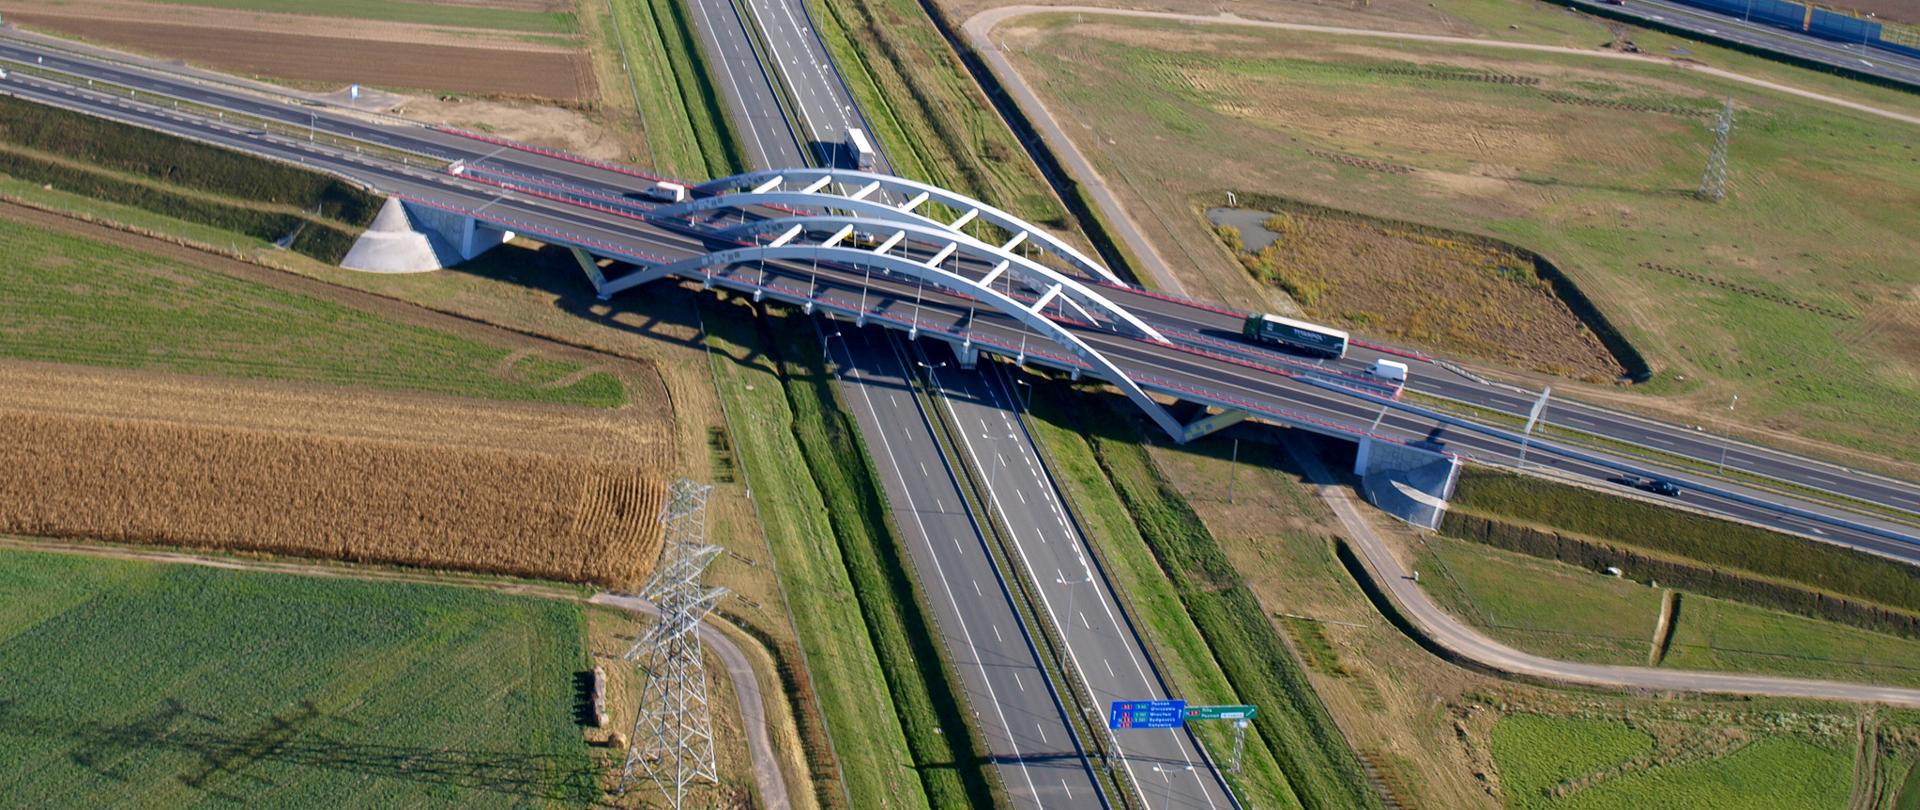 Widok z powietrza na węzeł Poznań Zachód, skrzyżowanie A2 z S5 i S11. Na pierwszym planie dwujezdniowa autostrada A2 i biegnące nad nią wiadukty dwujezdniowej drogi ekspresowej S5 i S11 oraz węzeł drogowy.